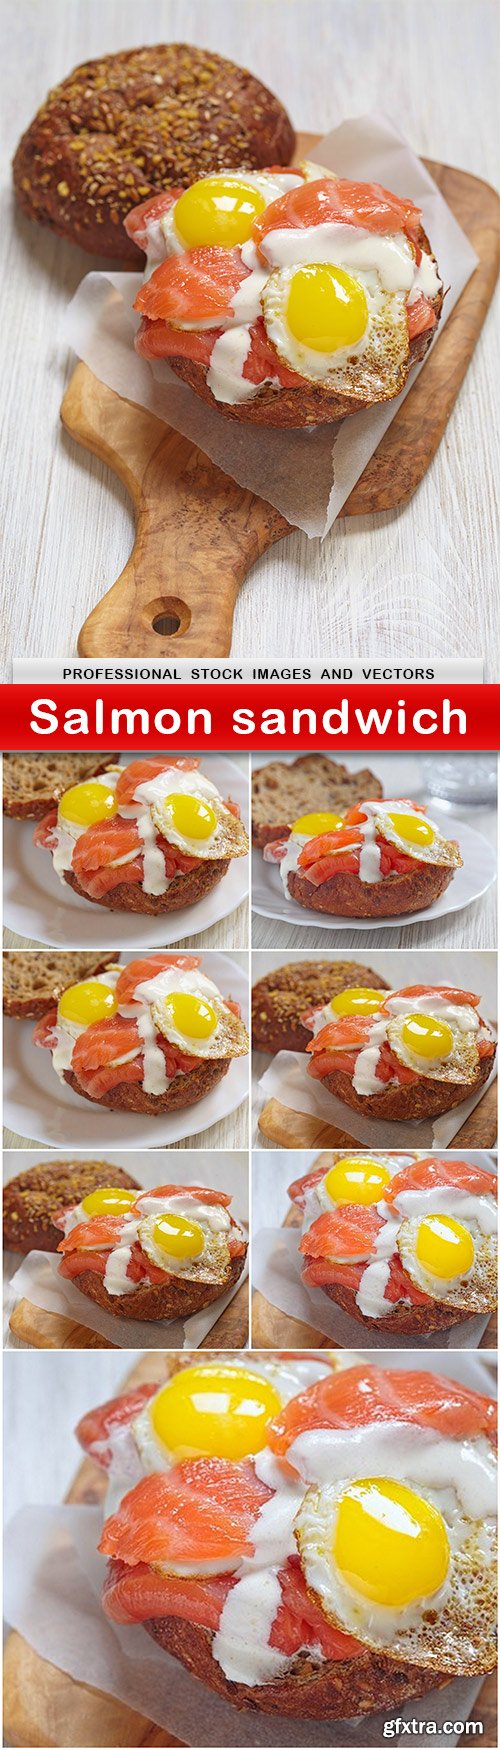 Salmon sandwich - 8 UHQ JPEG